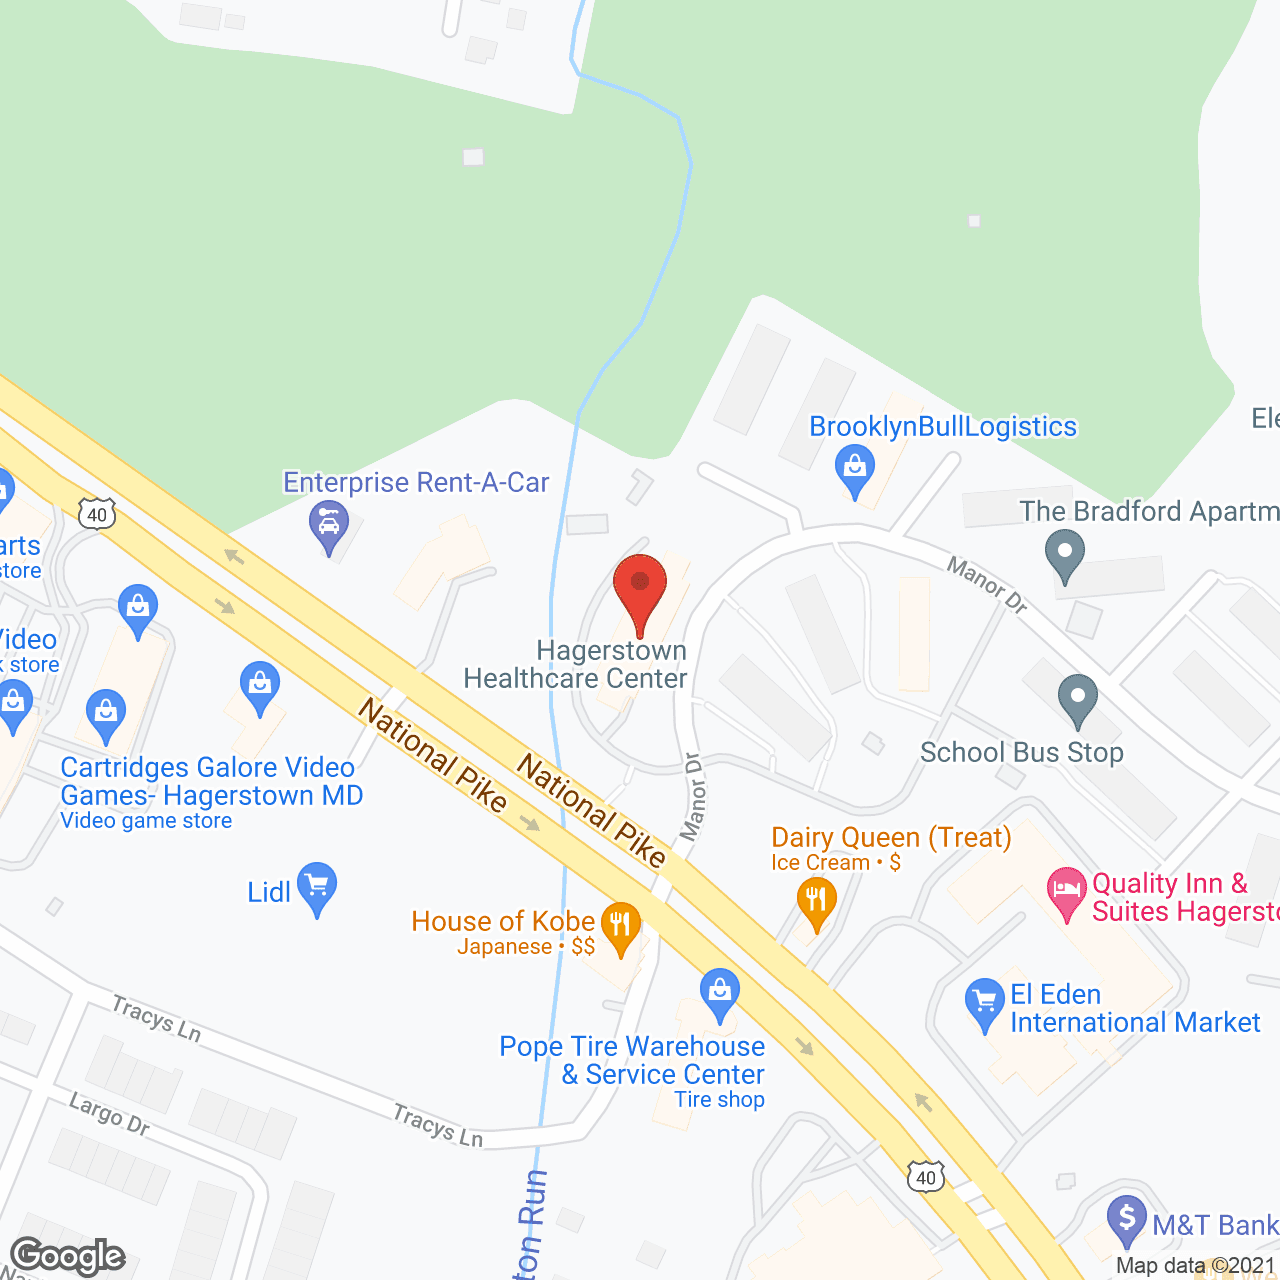 Golden LivingCenter - Hagerstown in google map